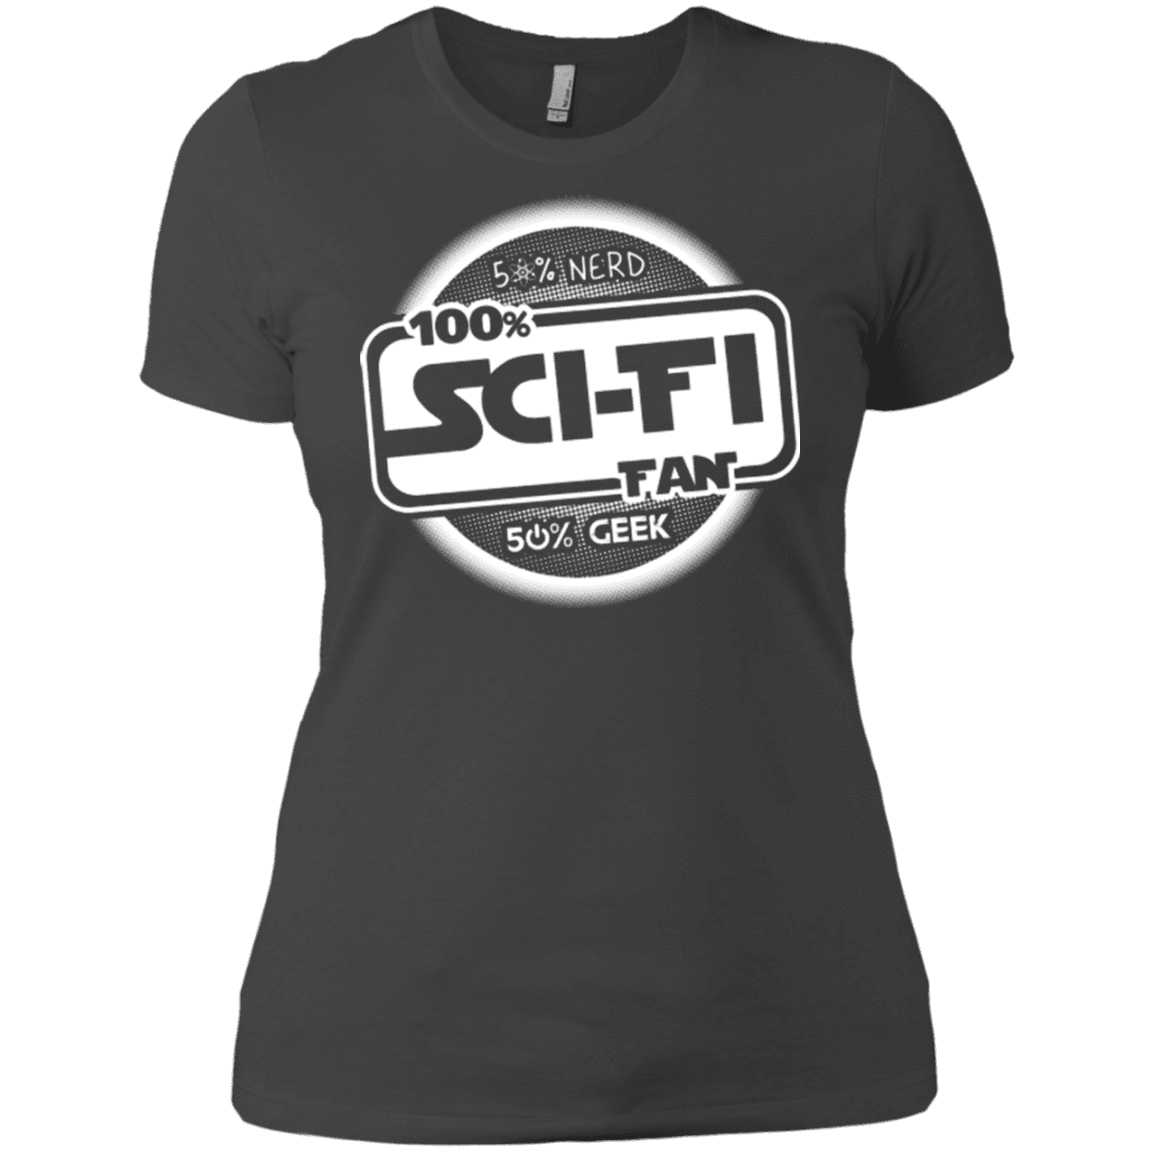 T-Shirts Heavy Metal / X-Small 100 Percent Sci-fi Women's Premium T-Shirt